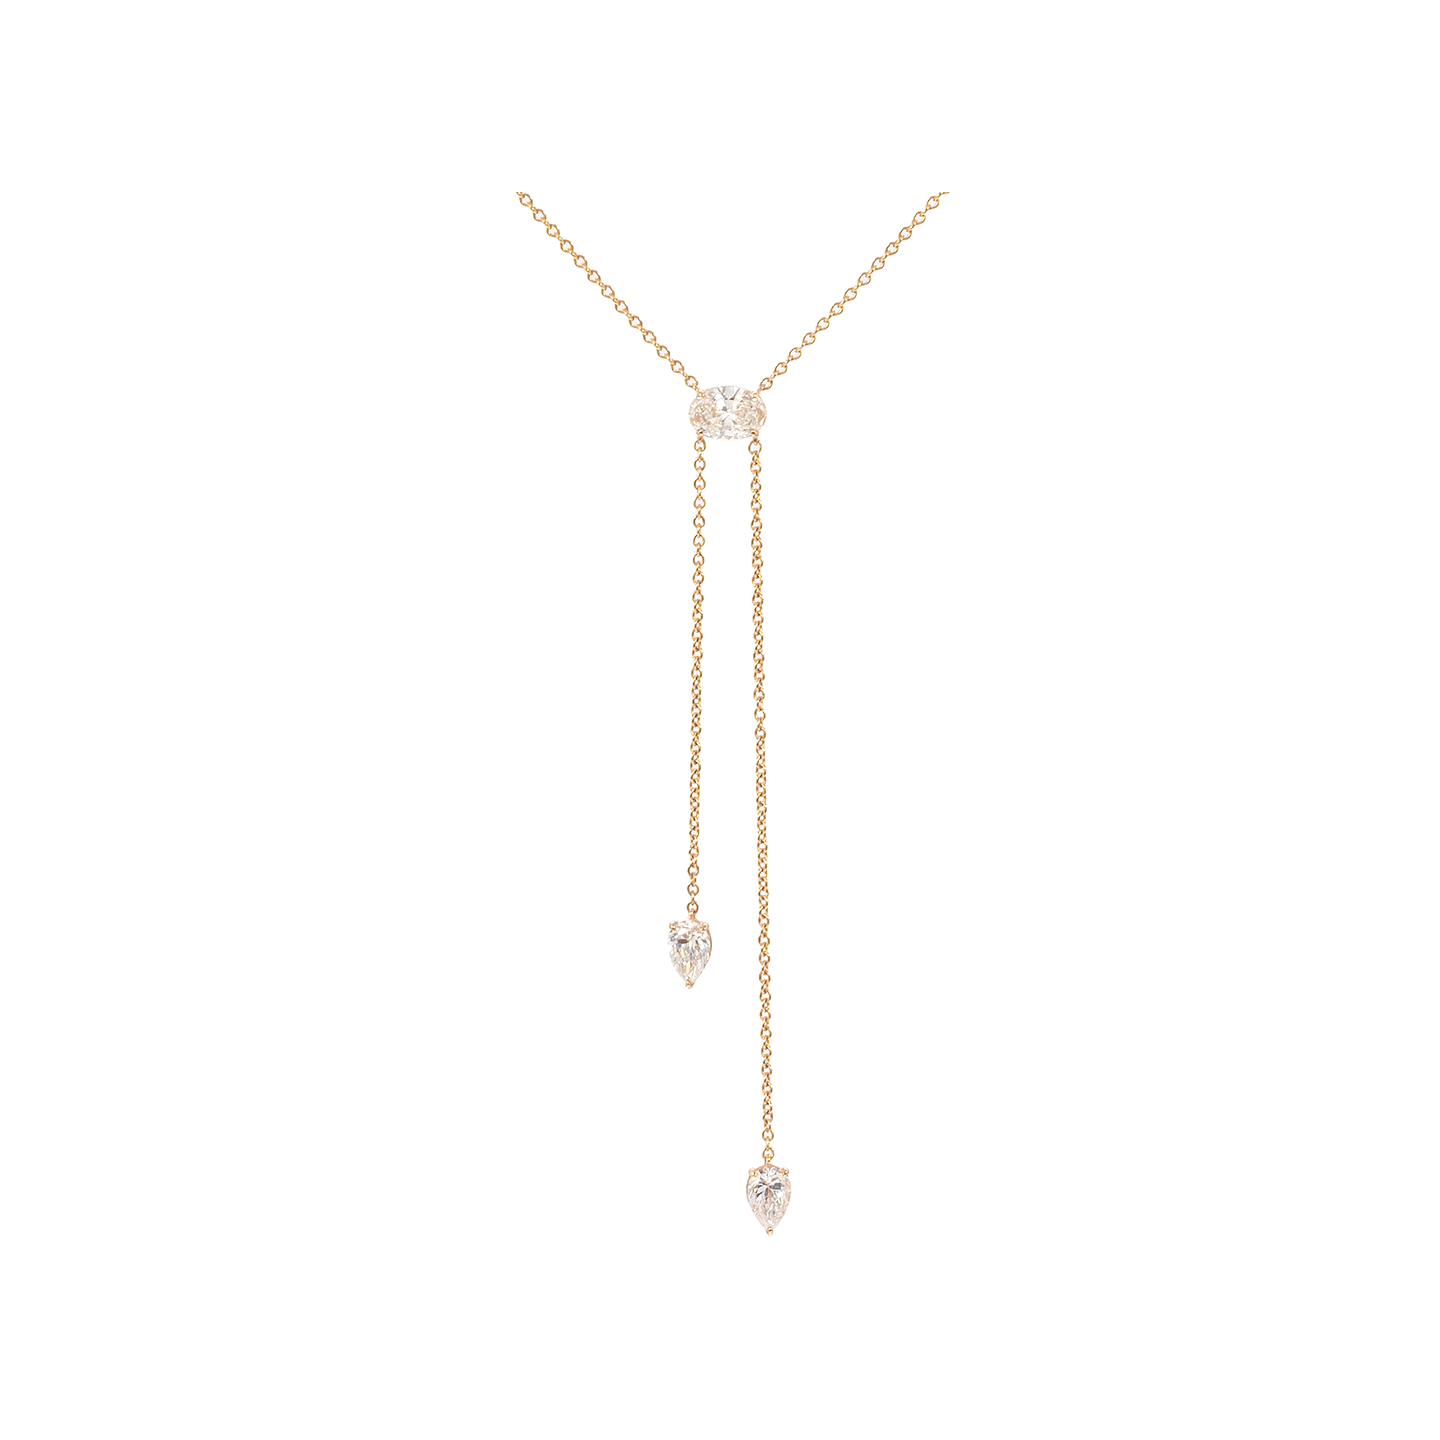 Eva Fehren Boa Bolo 18k Rose Gold Diamond Necklace